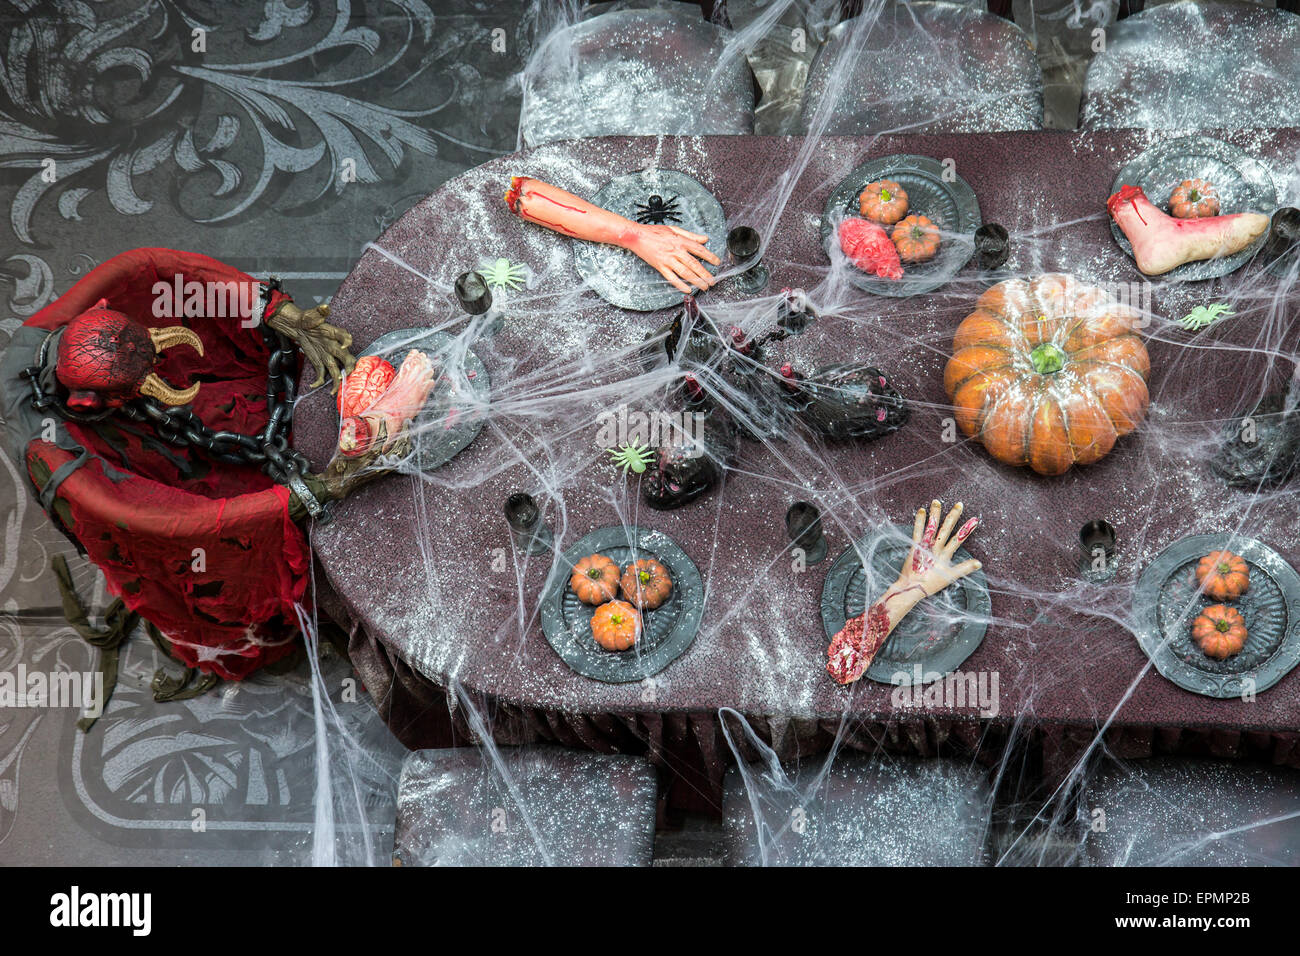 Cena con partes del cuerpo humano sobre la mesa, adornado con telas de araña Foto de stock